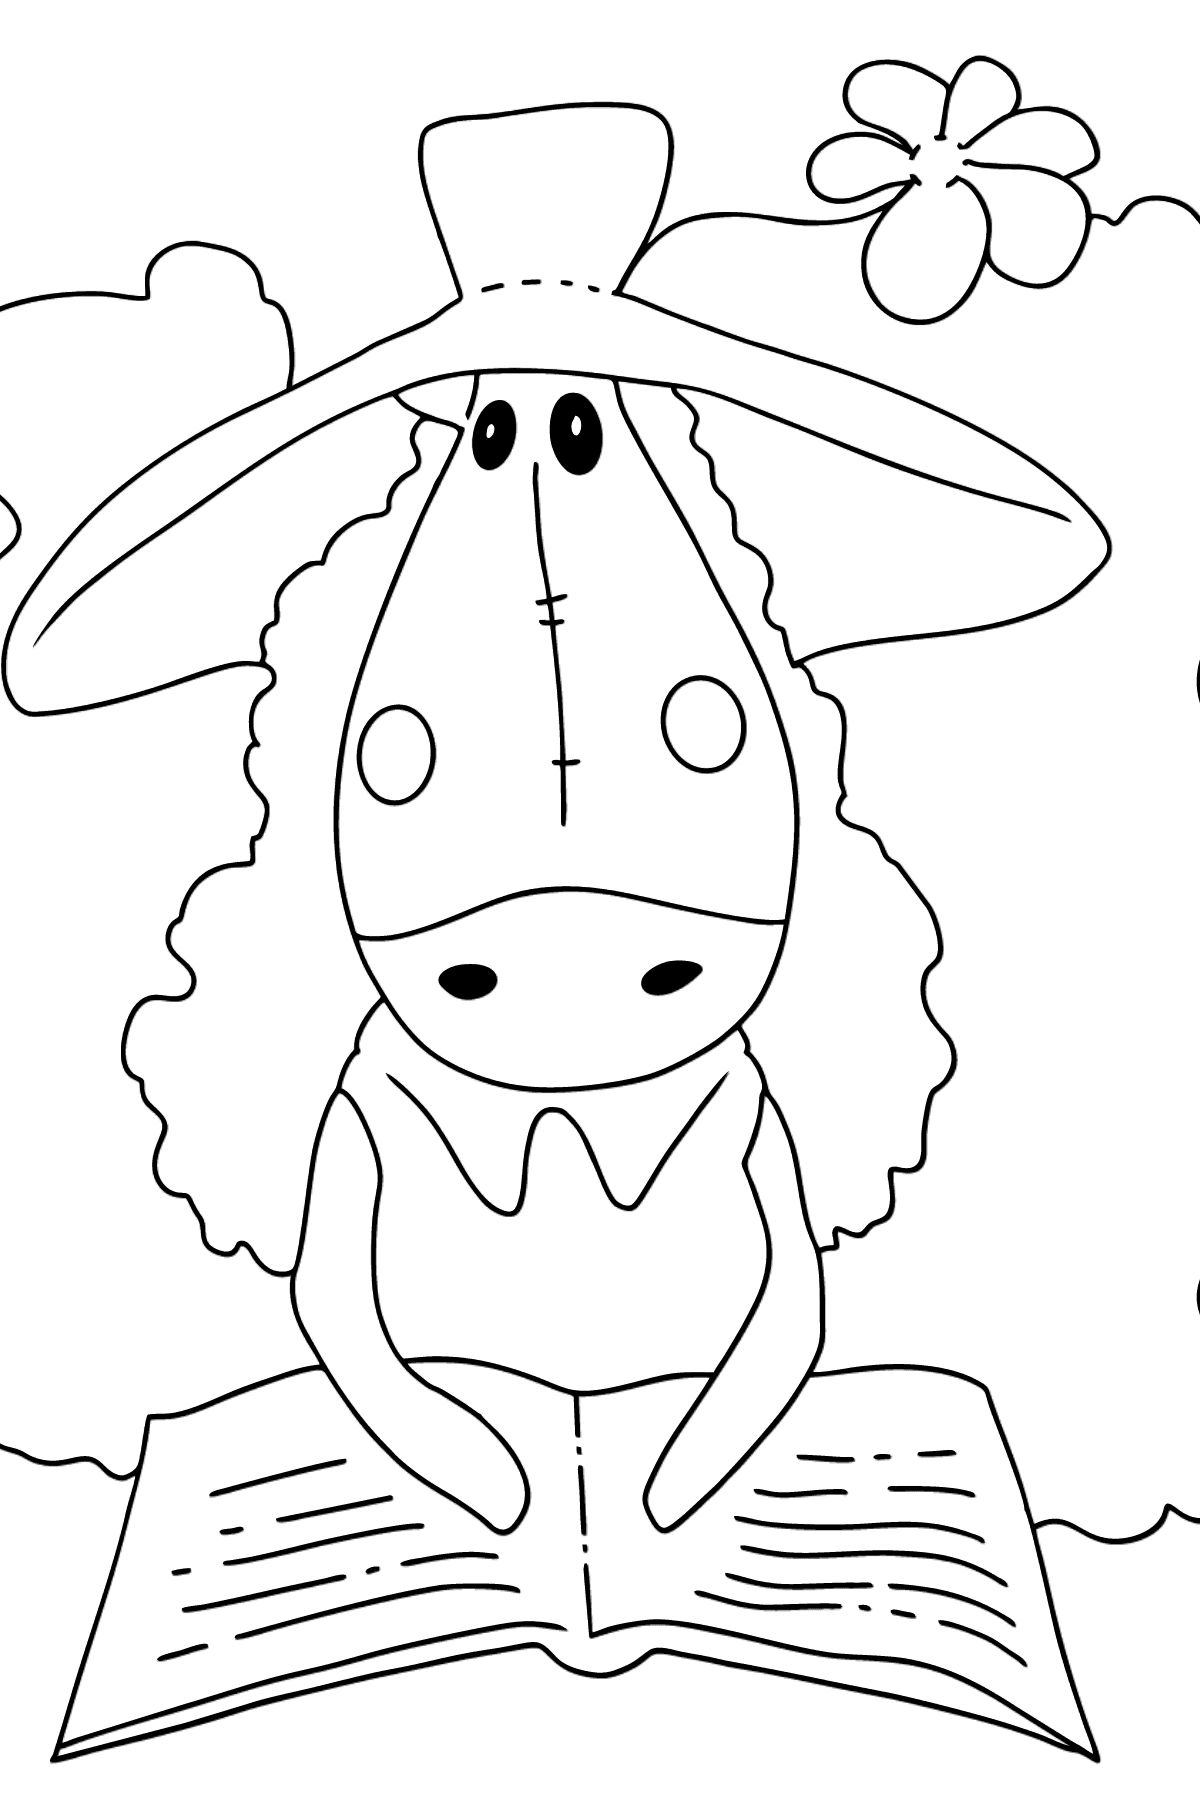 Проста Розмальовка Кінь для дітей від 2 років - Розмальовки для дітей